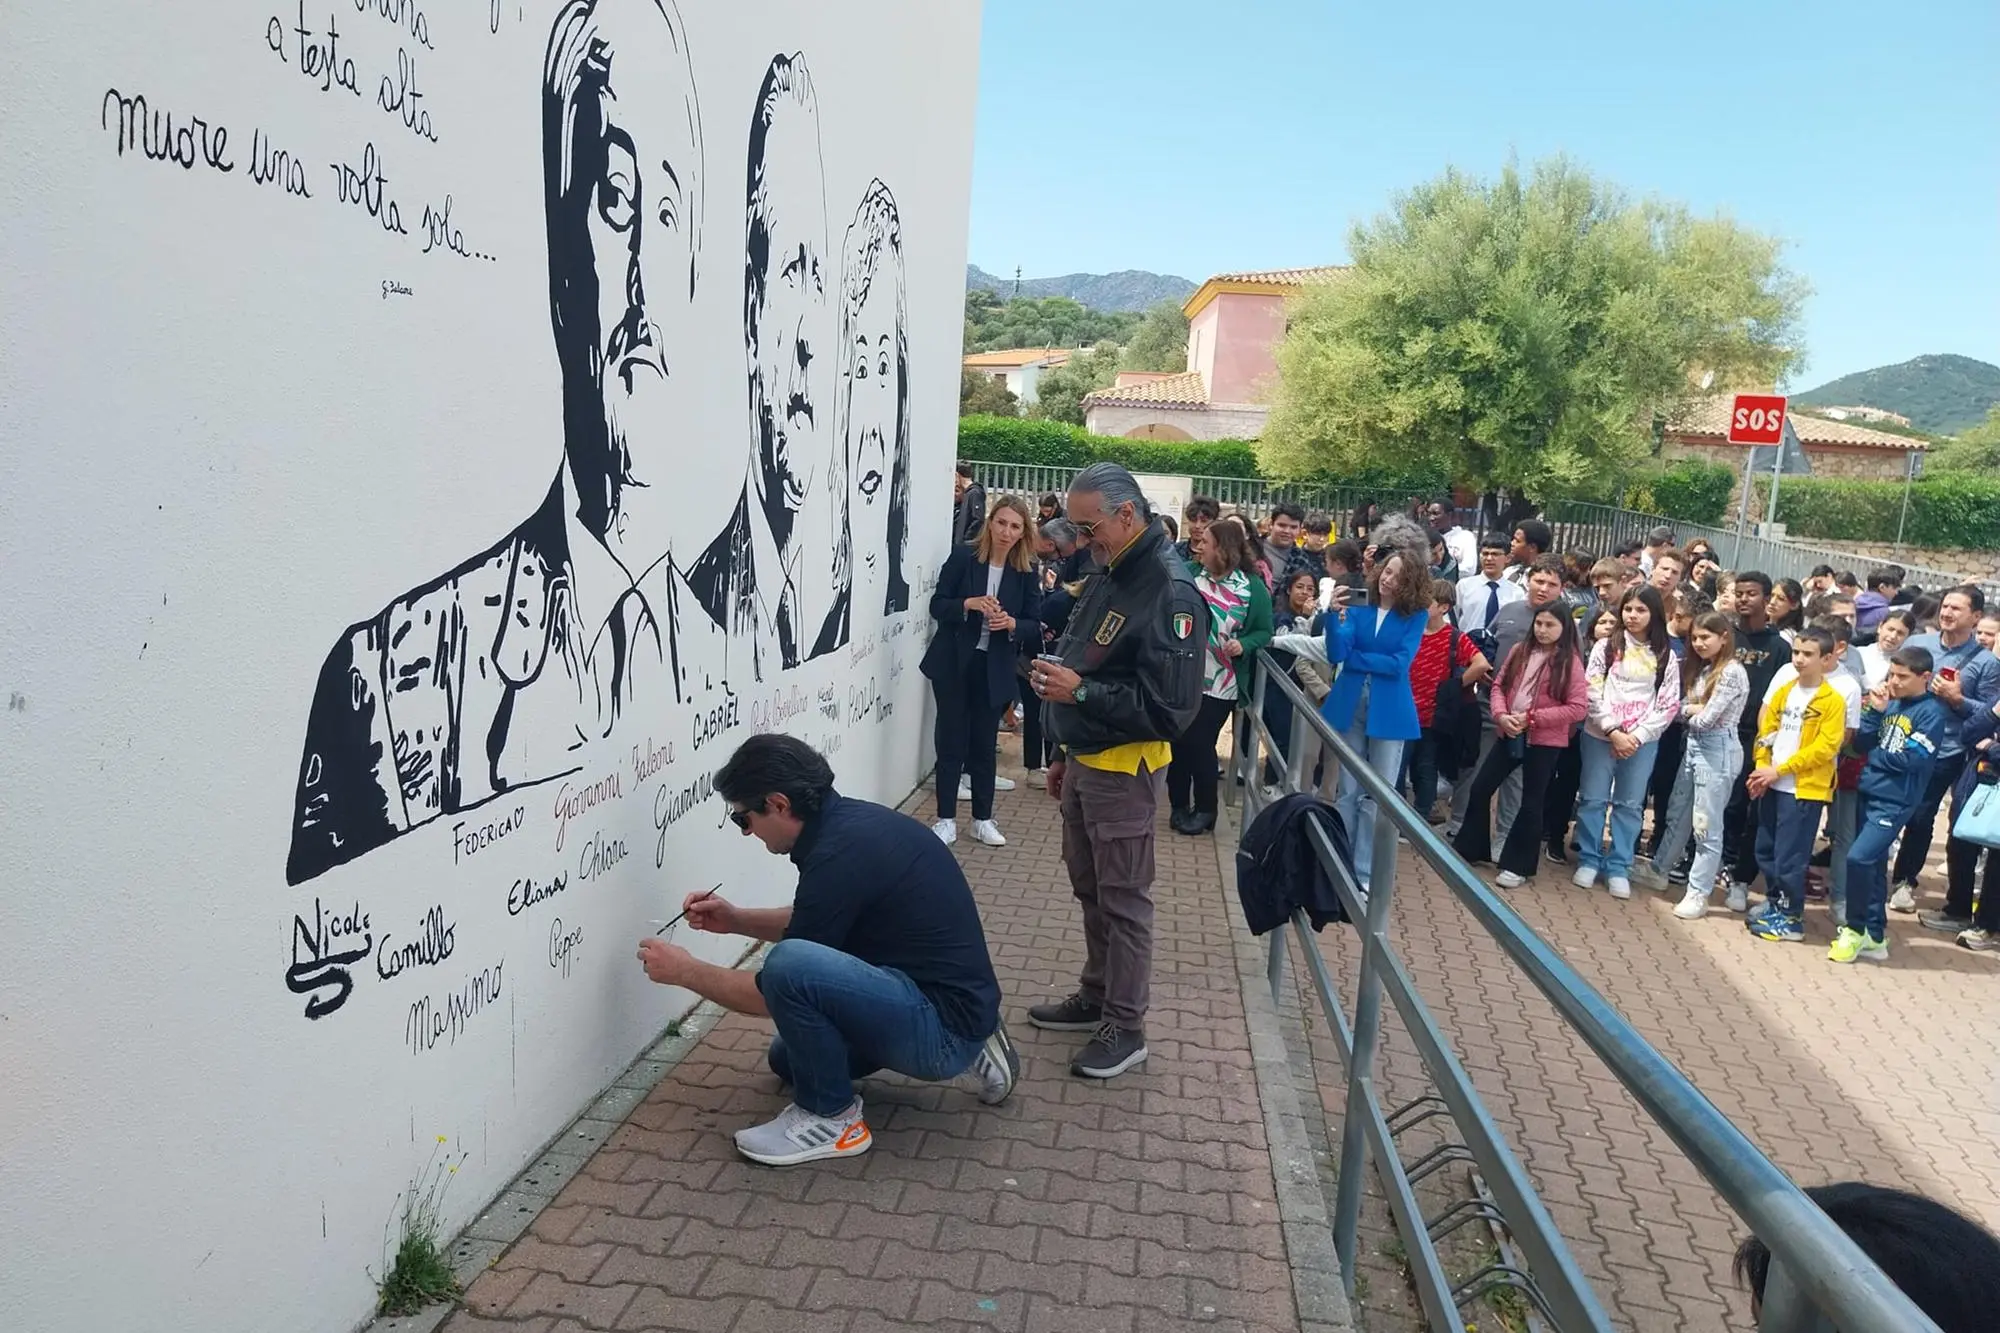 Luciano Tirindelli, Giuseppe Sammarco e la sindaca Rita Deretta davanti al murale (foto Lecca)